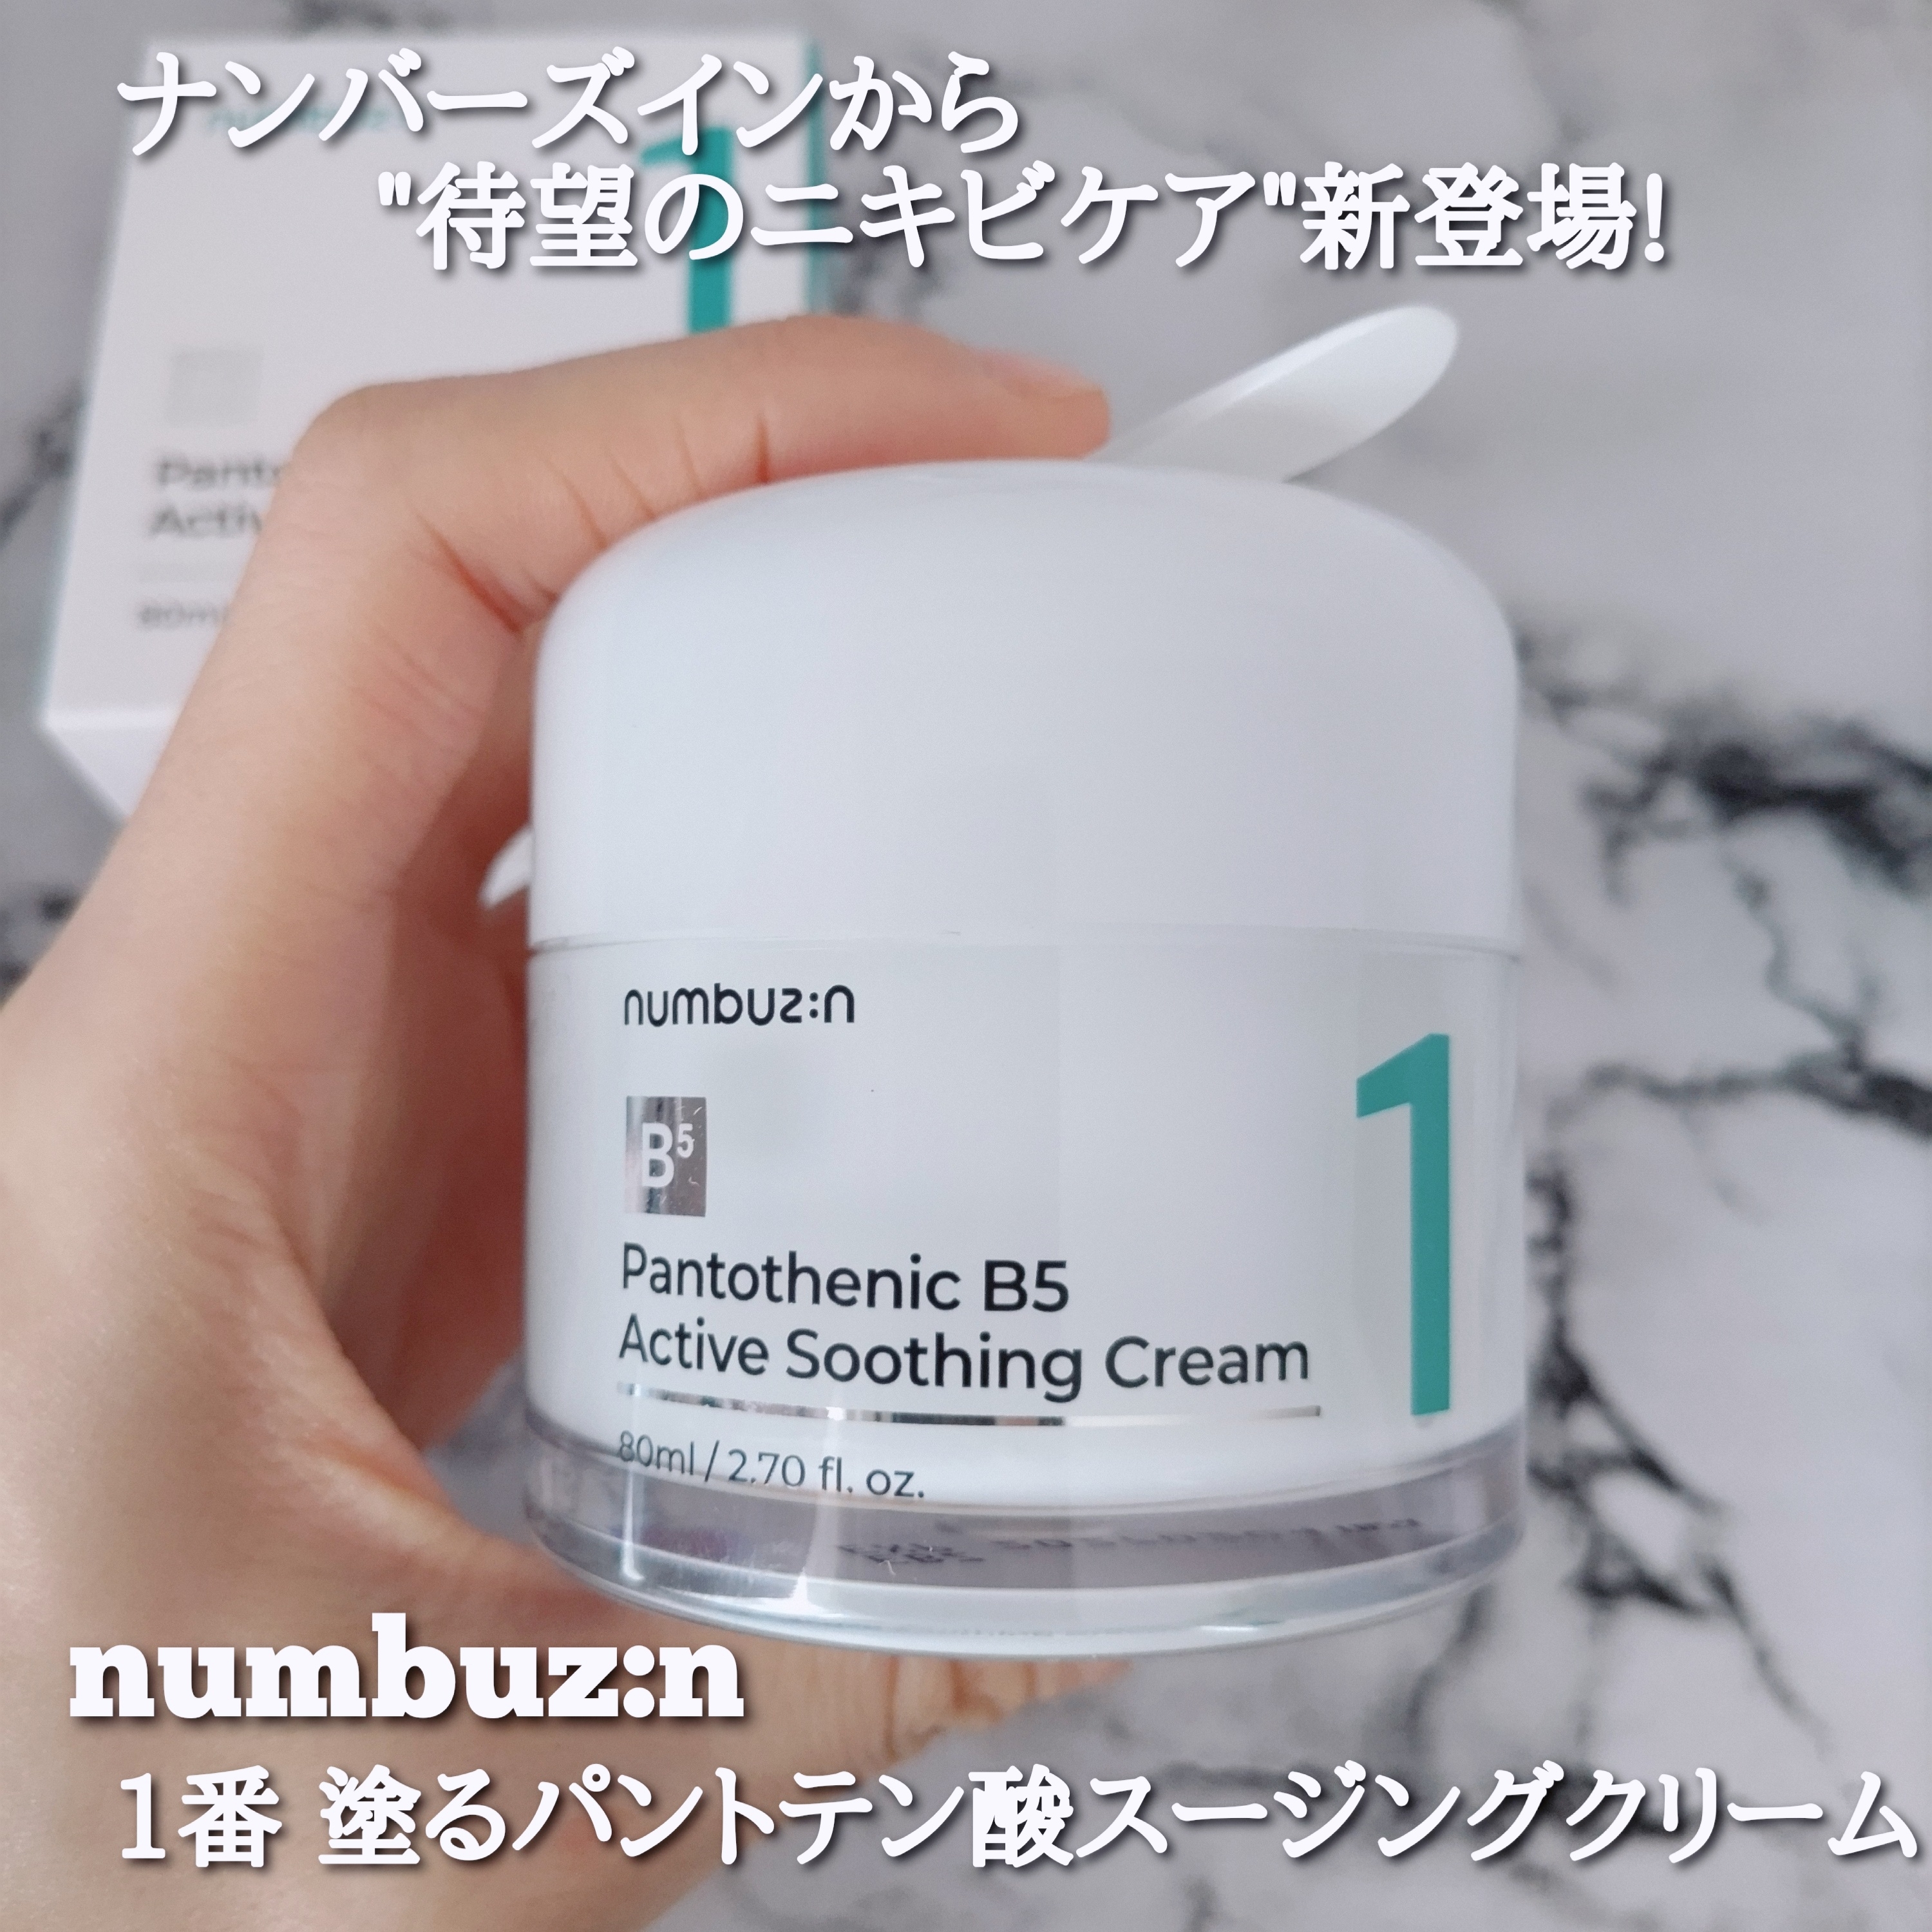 ナンバーズイン1番 塗るパントテン酸スージングクリームを使ったYuKaRi♡さんのクチコミ画像1